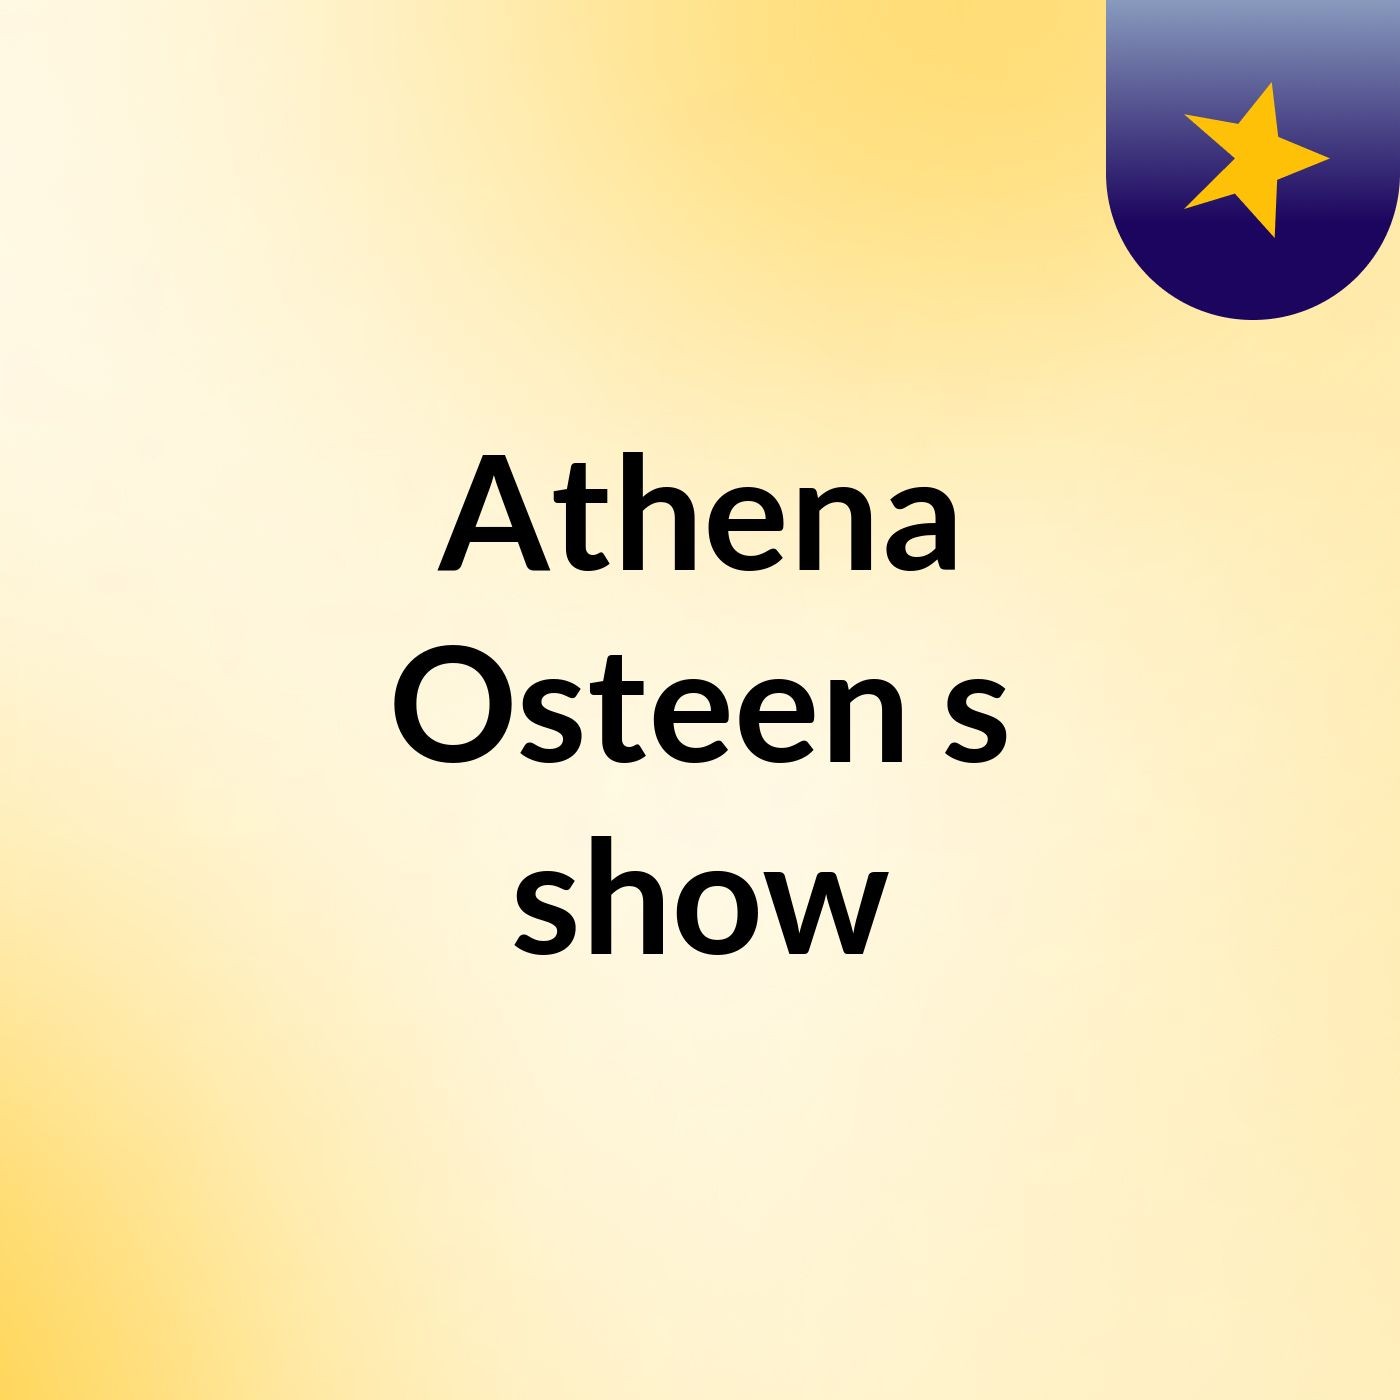 Athena Osteen's show